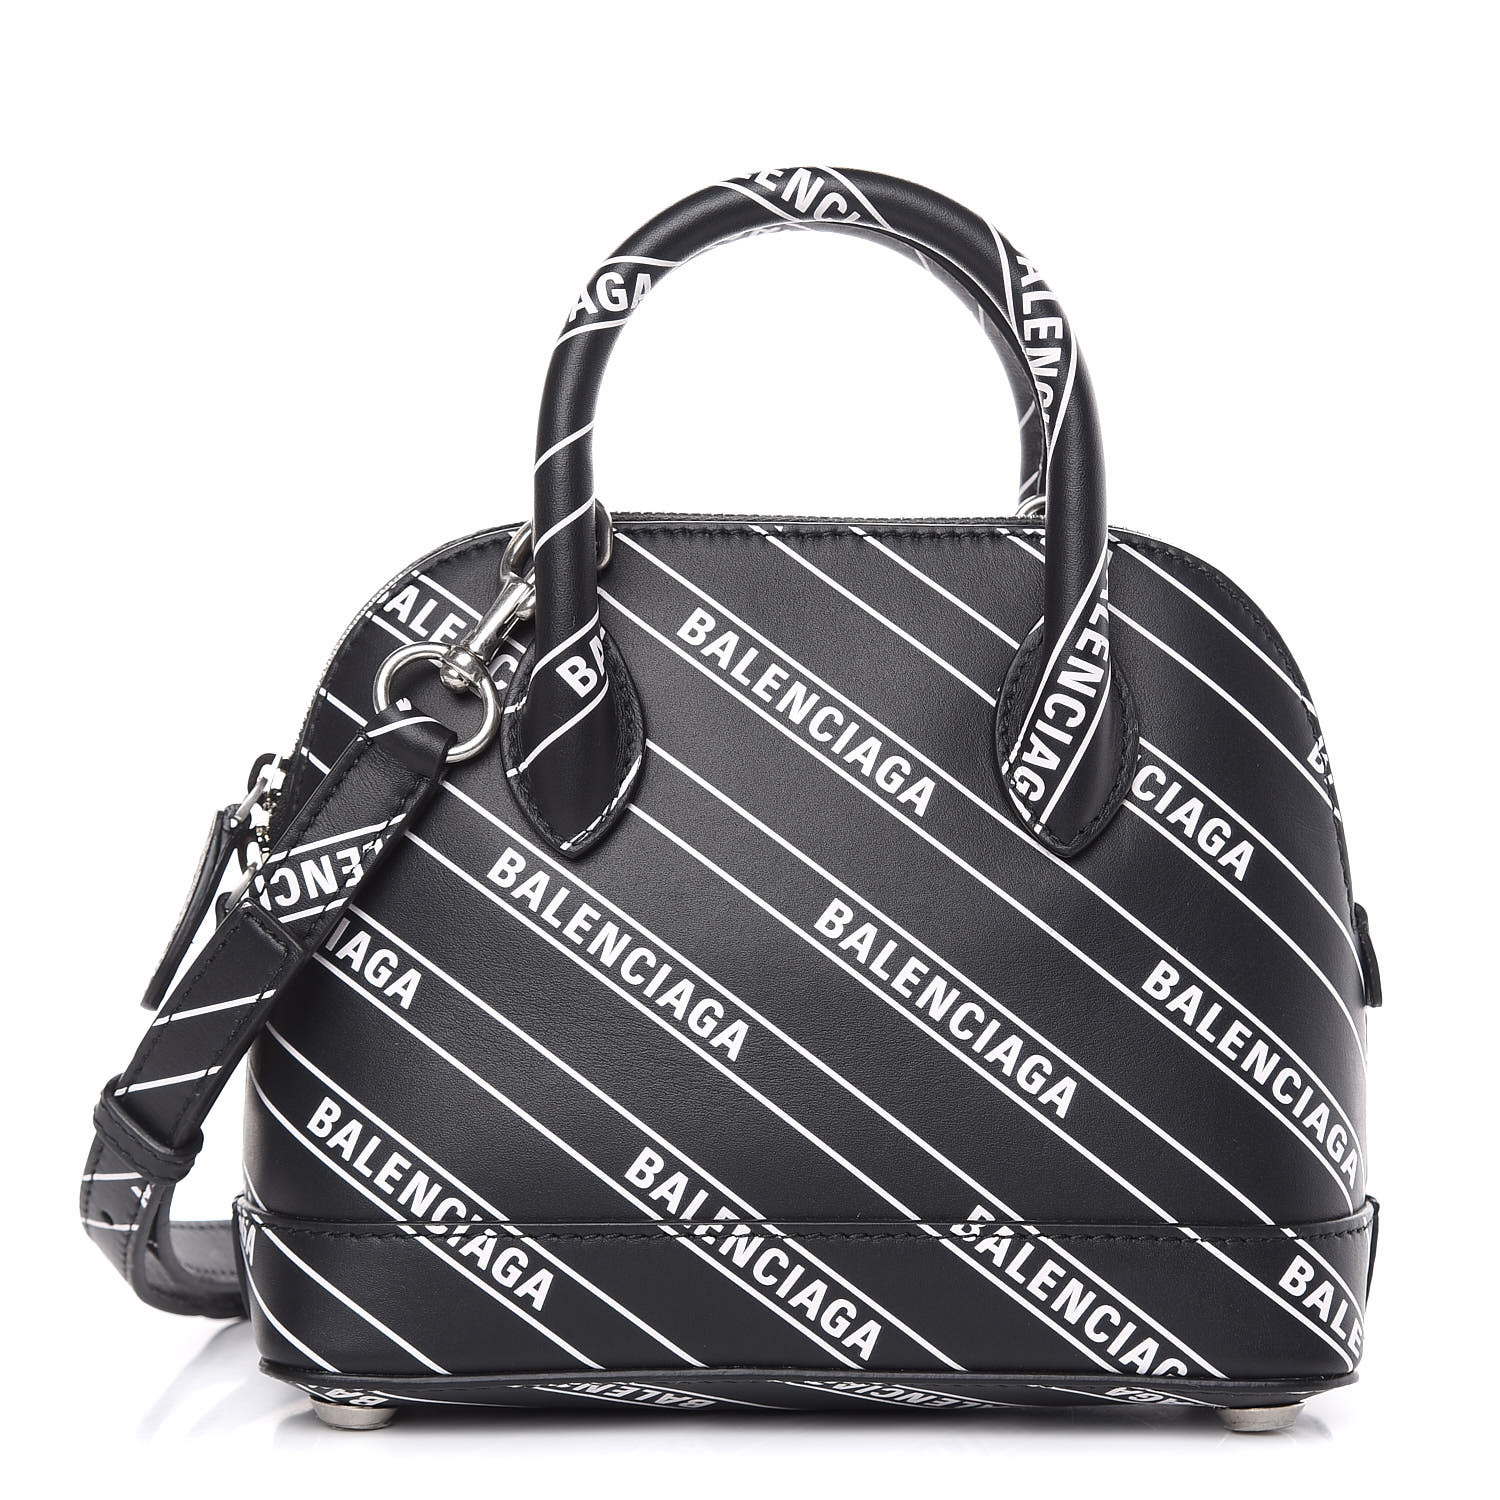 black and white balenciaga bag